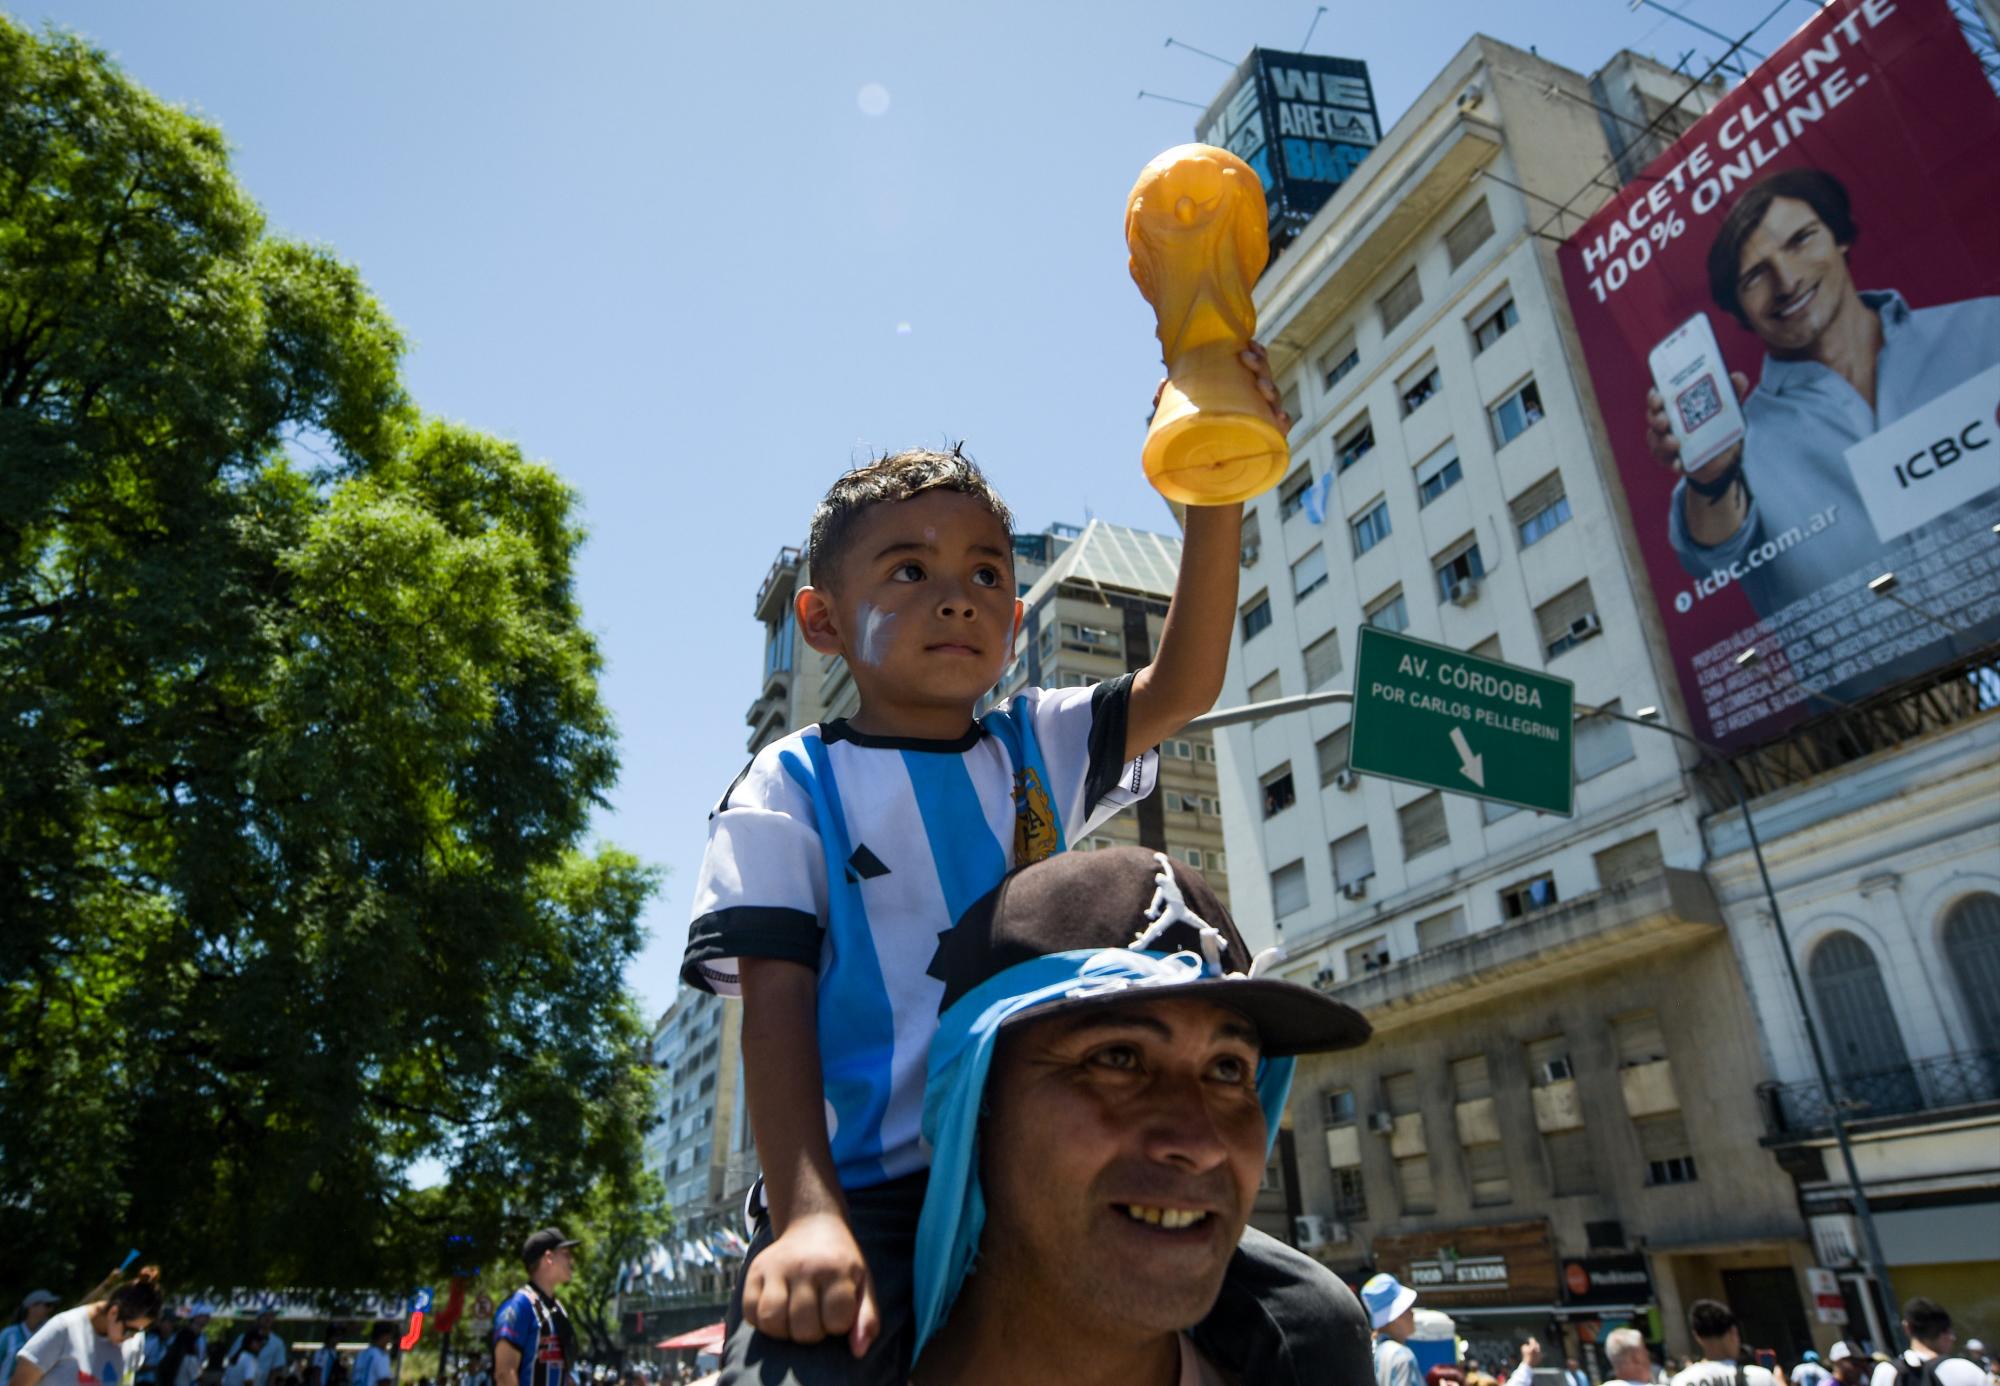 $!Millones de argentinos lloran, gritan y desbordan alegría por triunfo en el Mundial